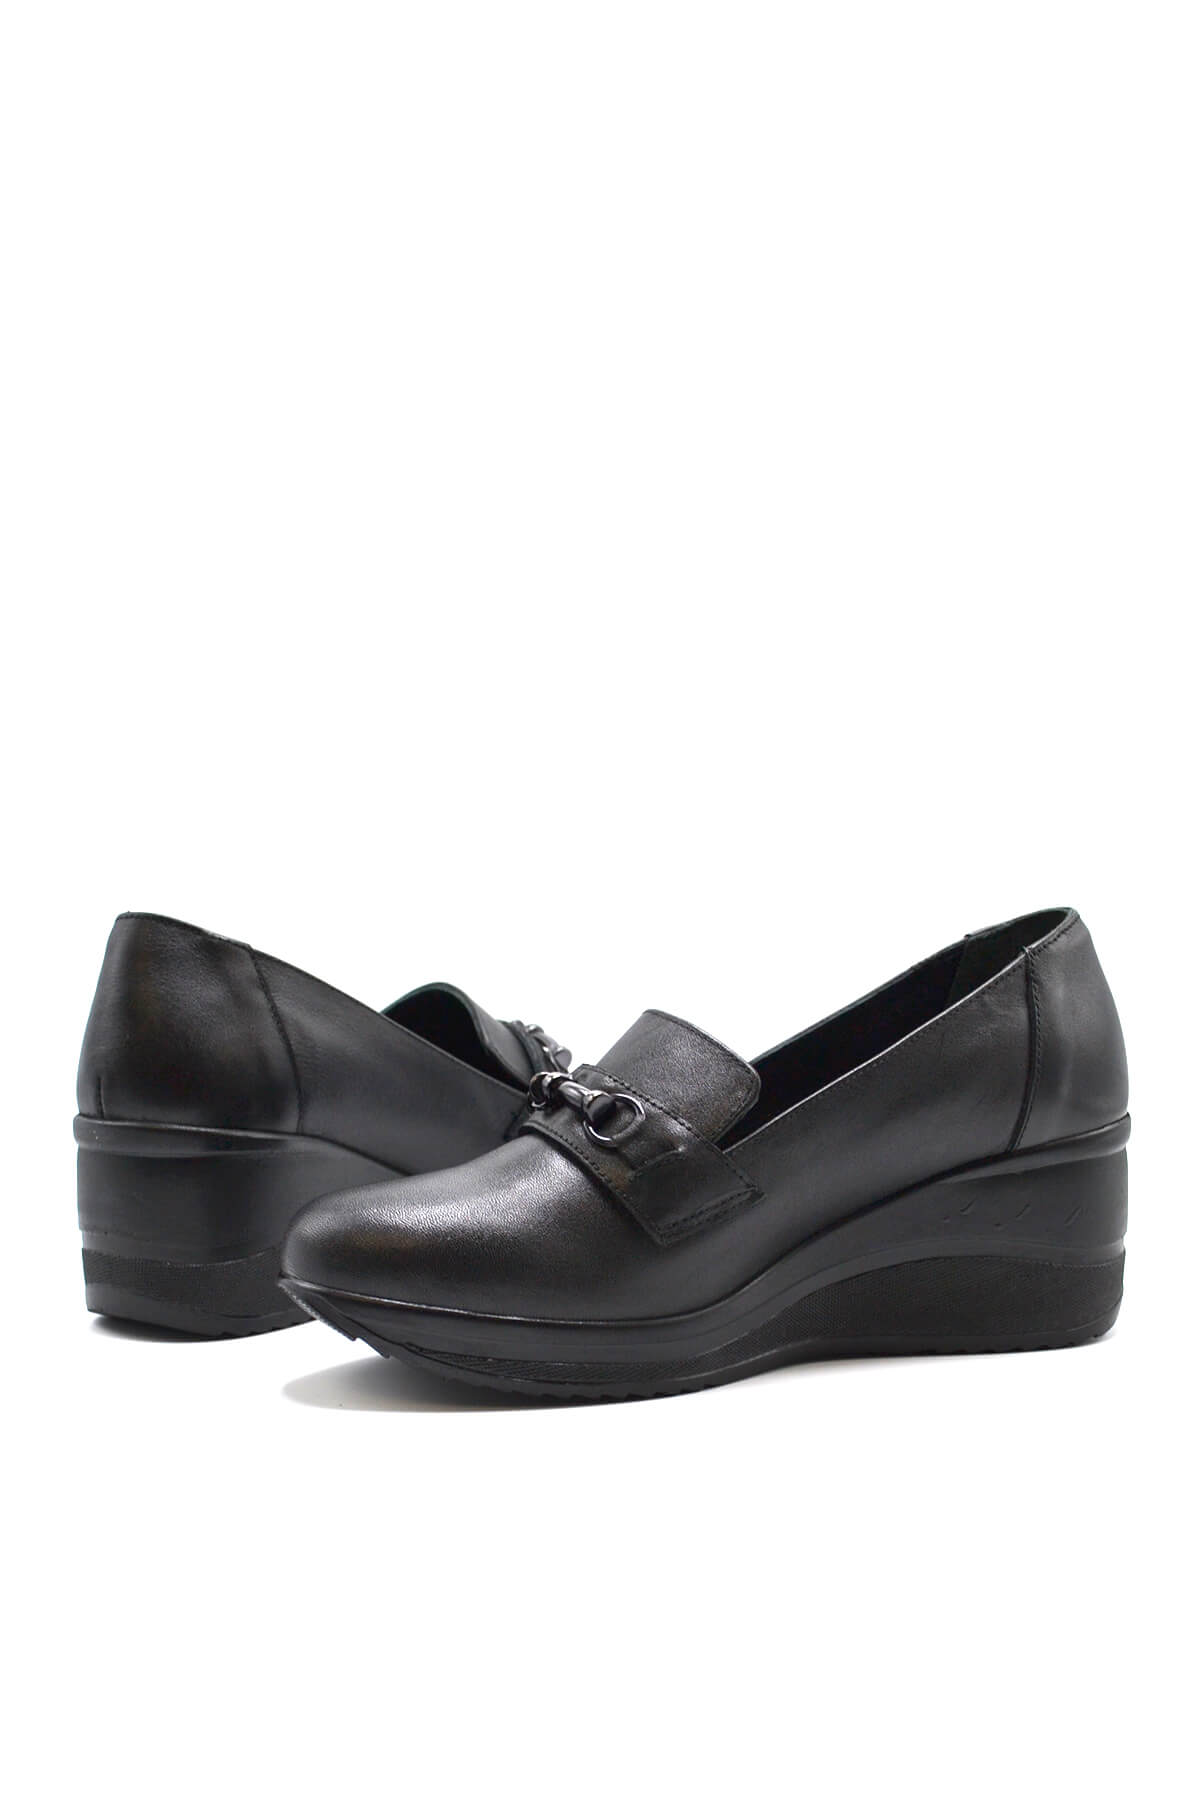 Kadın Dolgu Topuk Deri Ayakkabı Siyah 2111514K